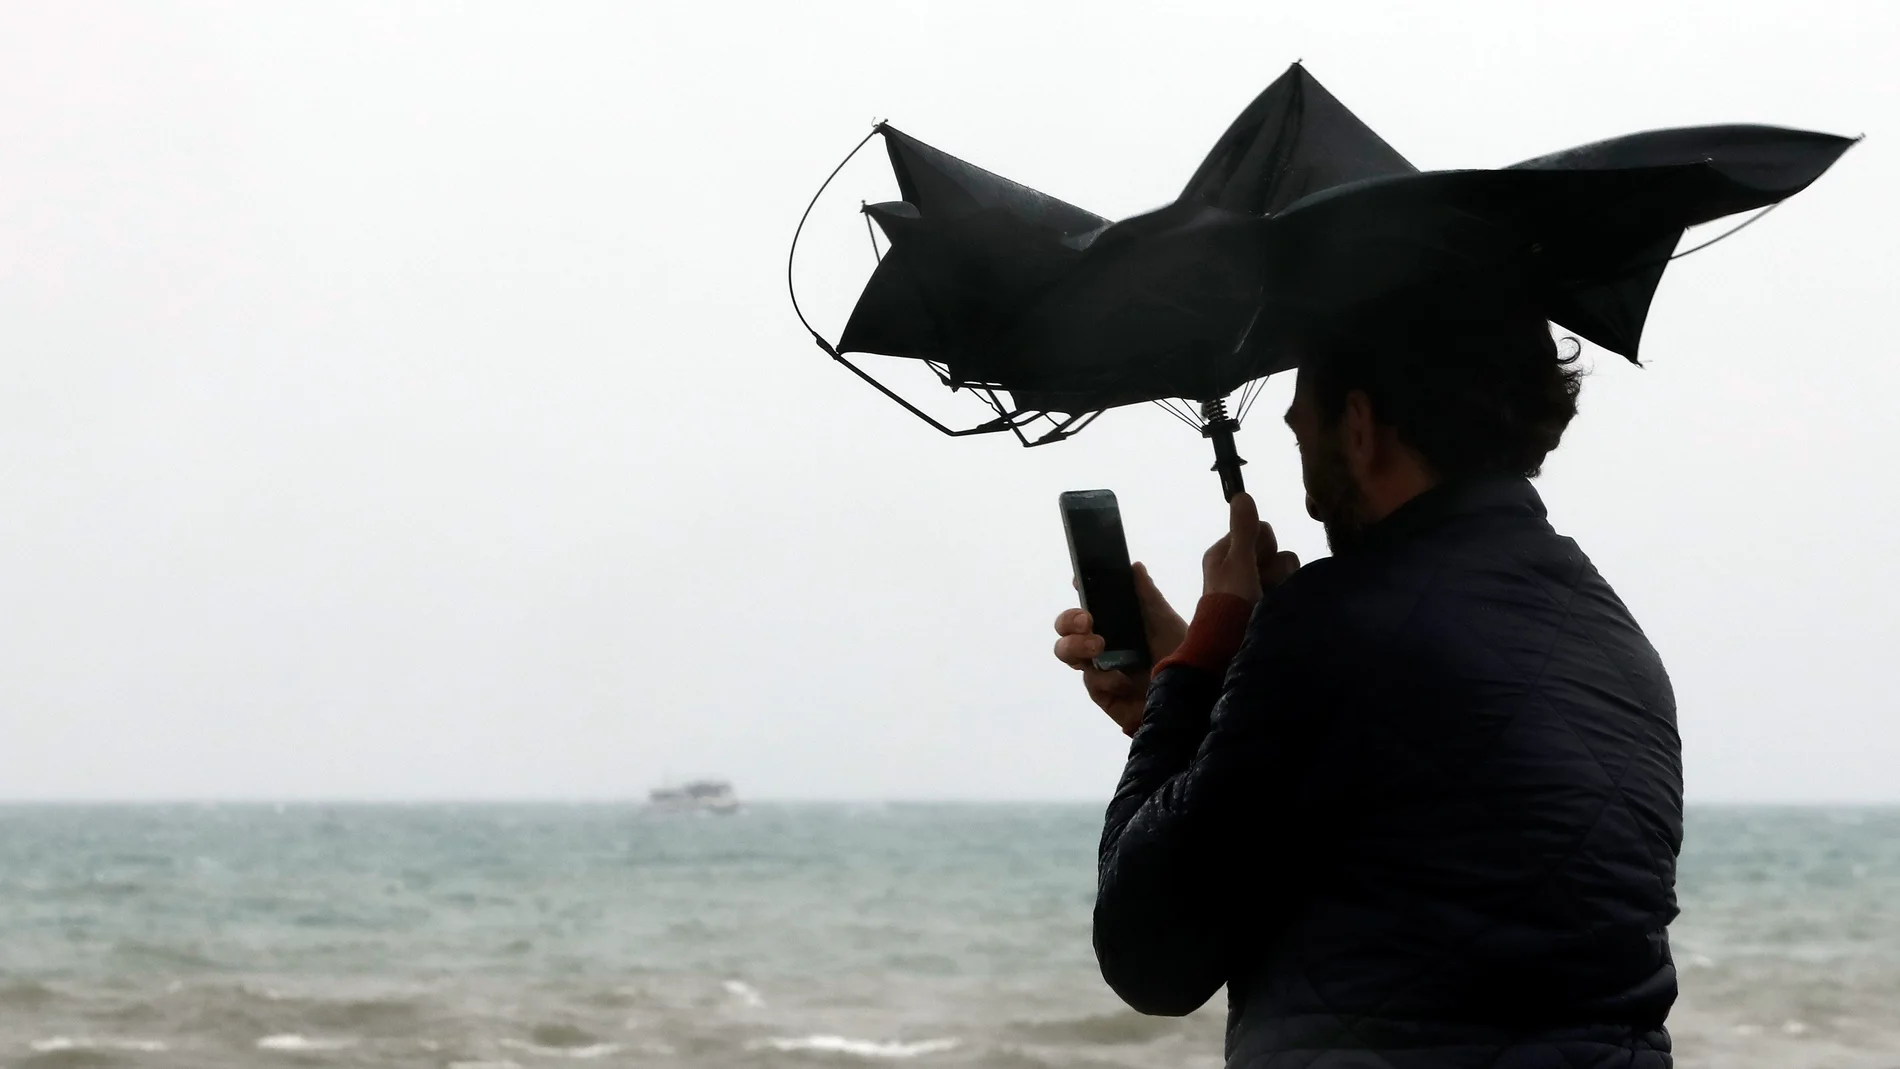 Imagen de archivo de una persona en la Playa de la Malvarrosa de Valéncia bajo la lluvia y el fuerte viento.